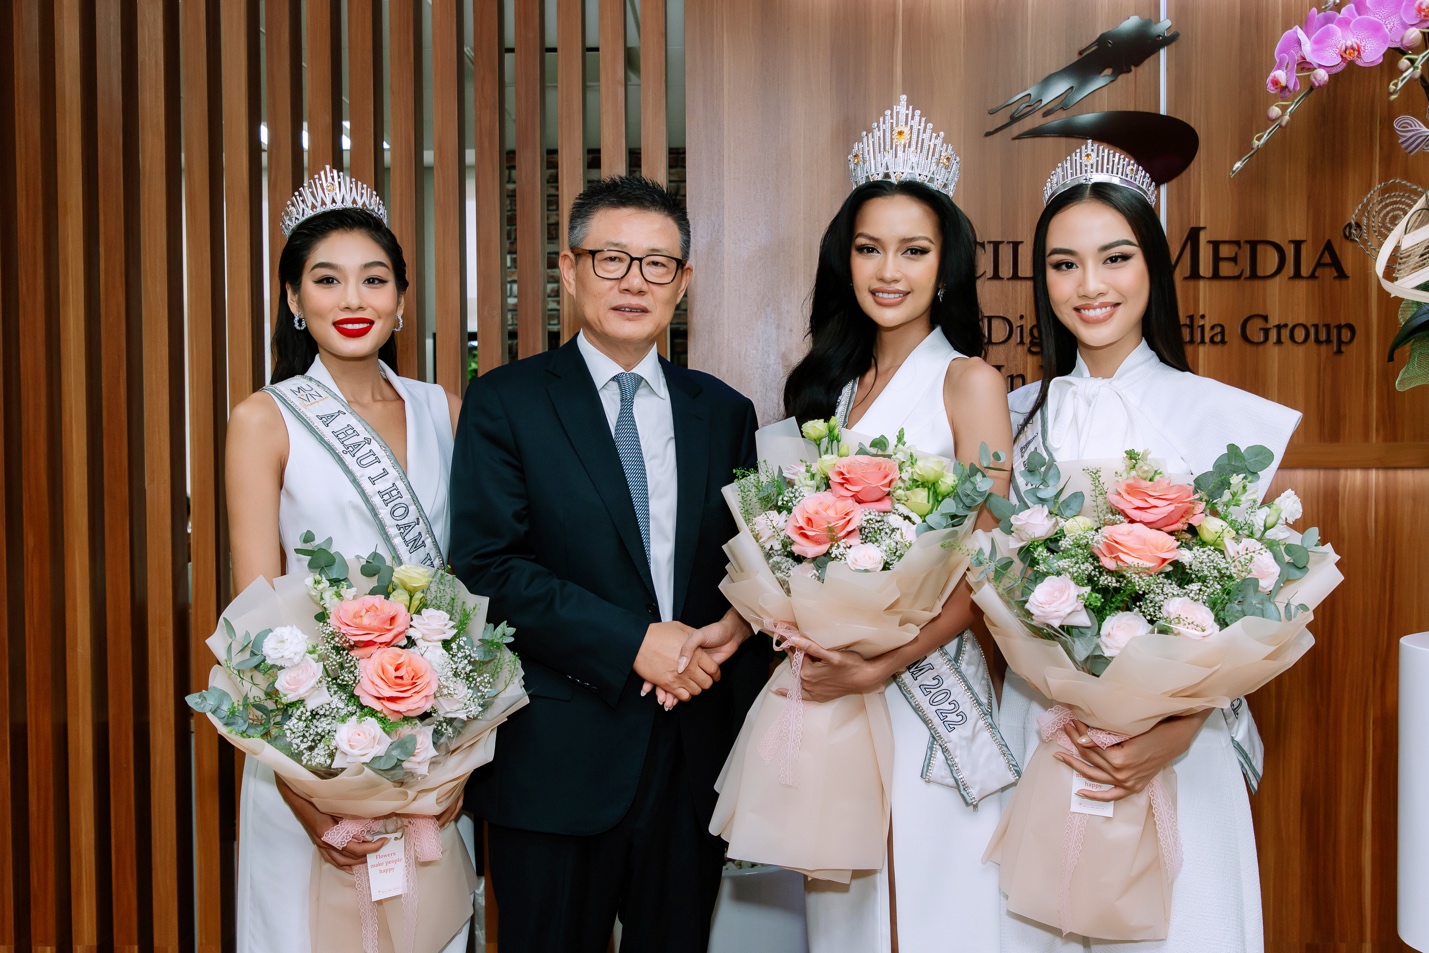 Top 3 Miss Universe Vietnam giao lưu cùng Chicilon Media